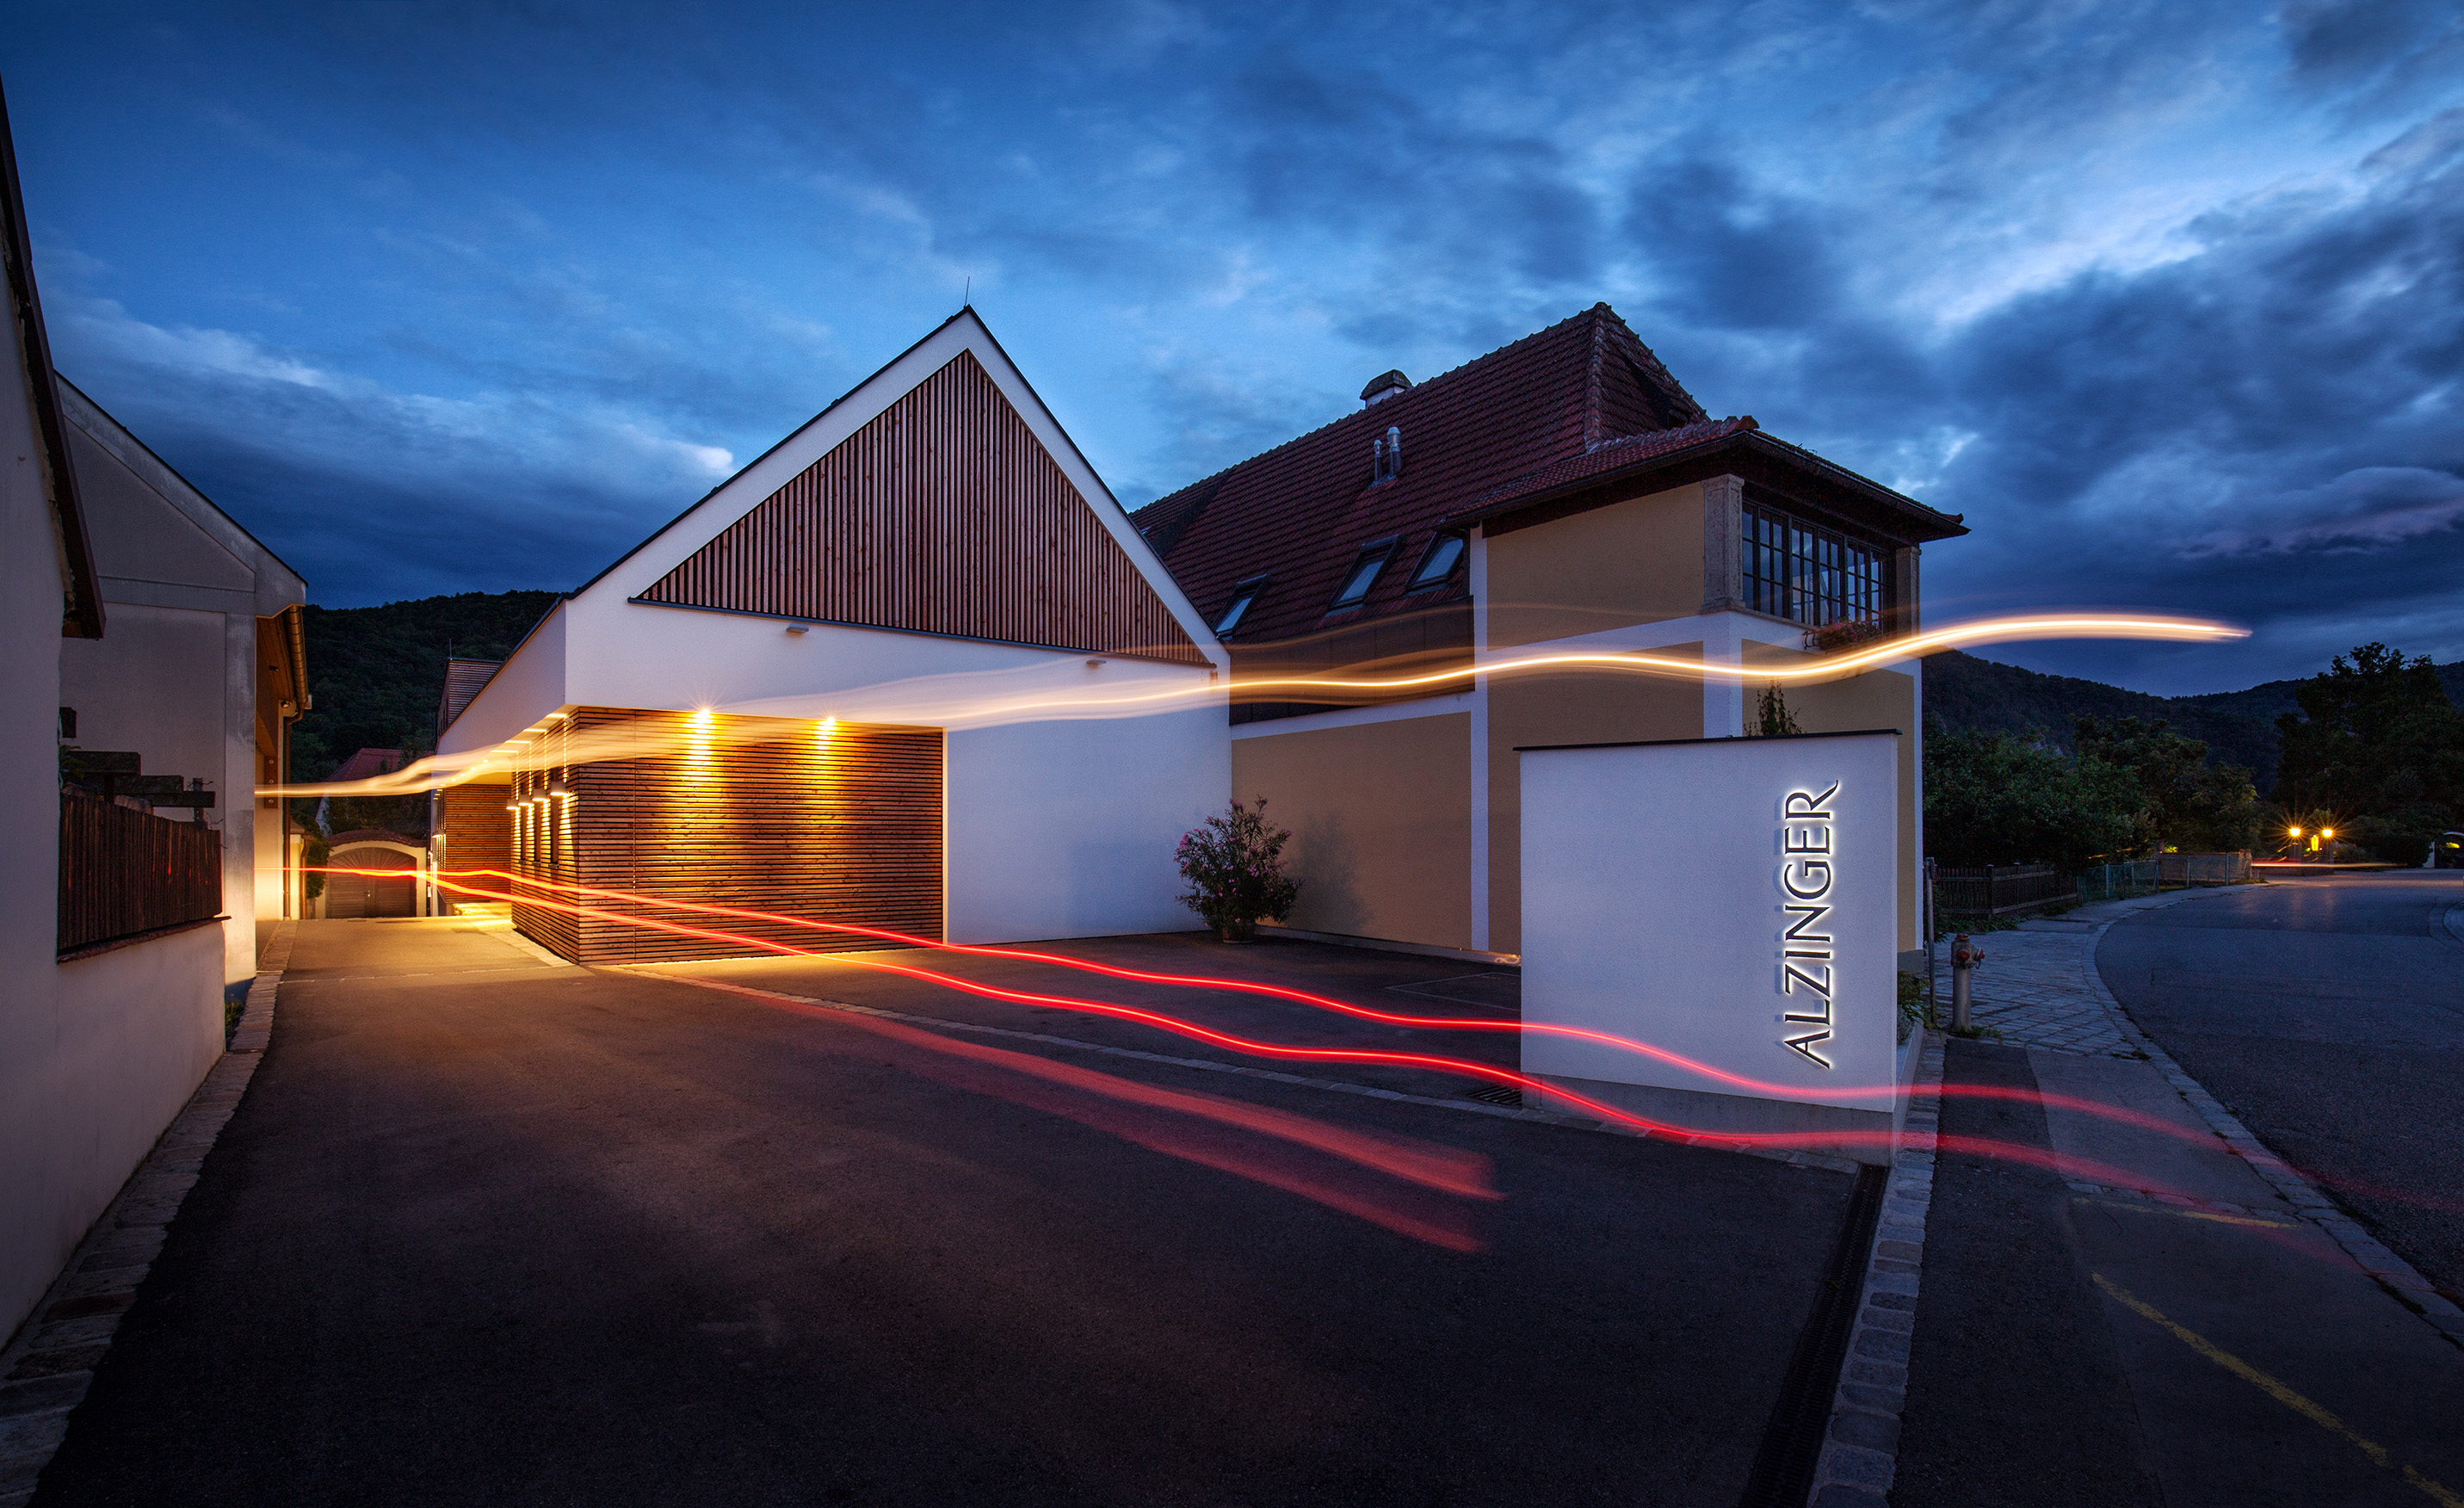 das Gebäude des Weingut Alzinger bei Nacht beläuchtet - modern umgebautes Bauernhaus